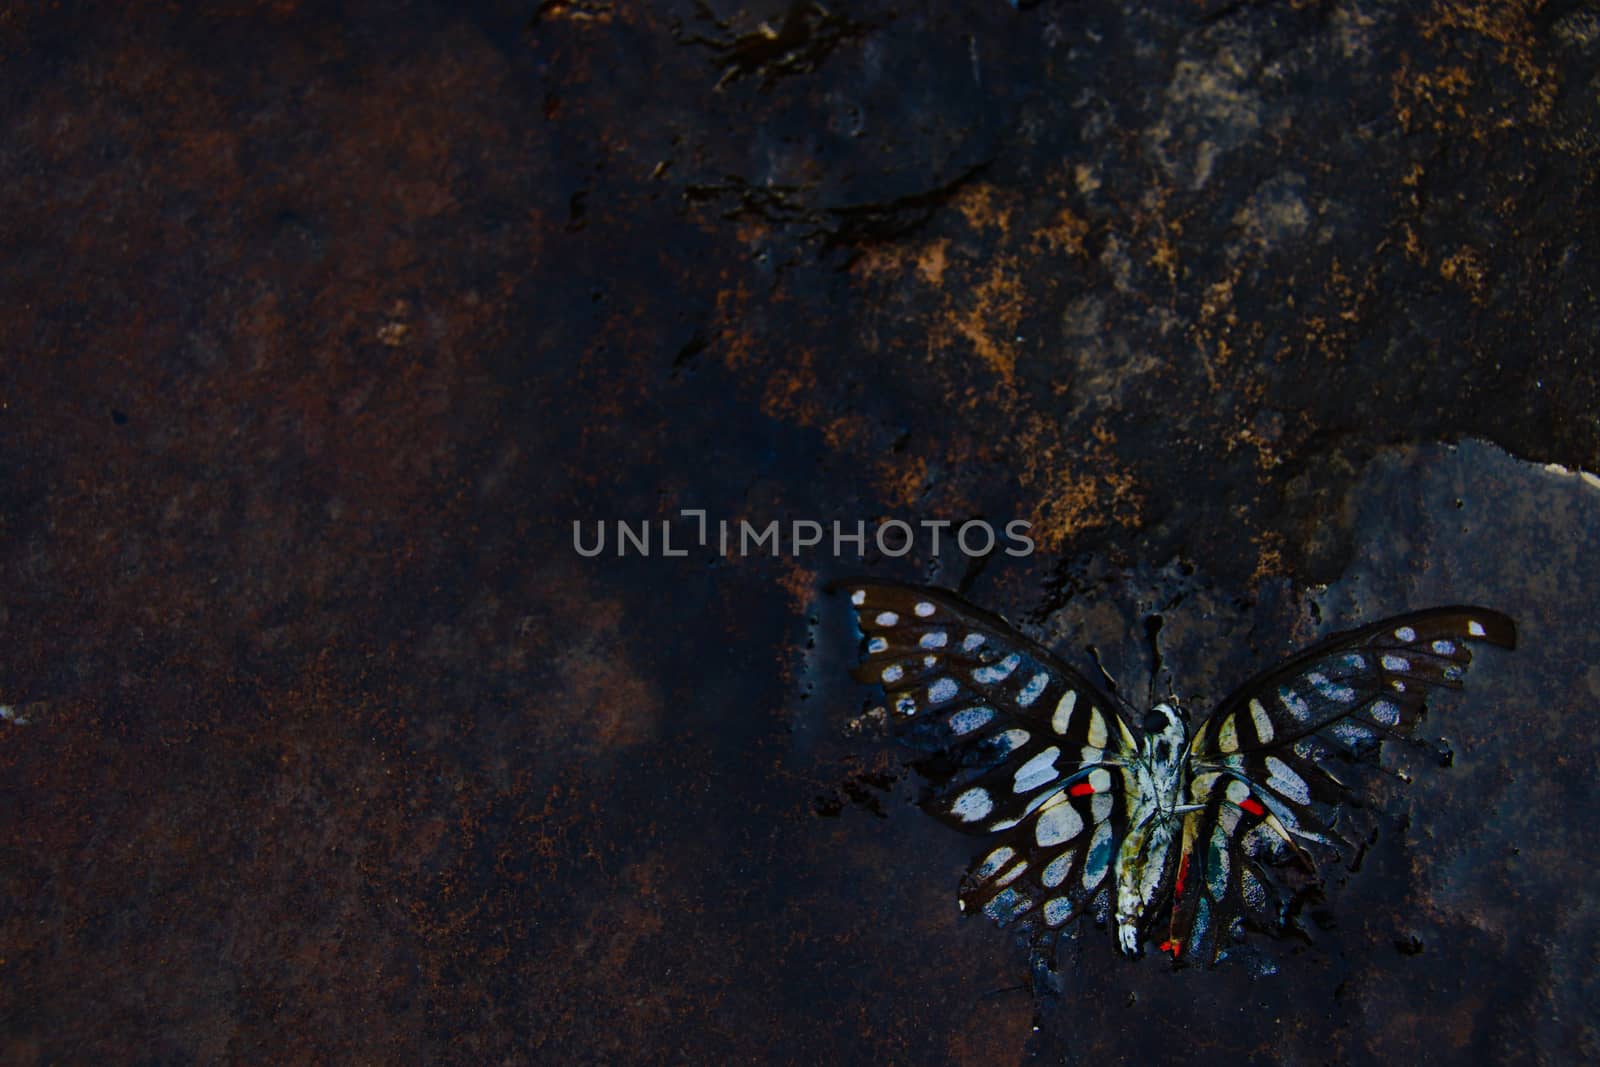 Dead Butterfly by Sonnet15